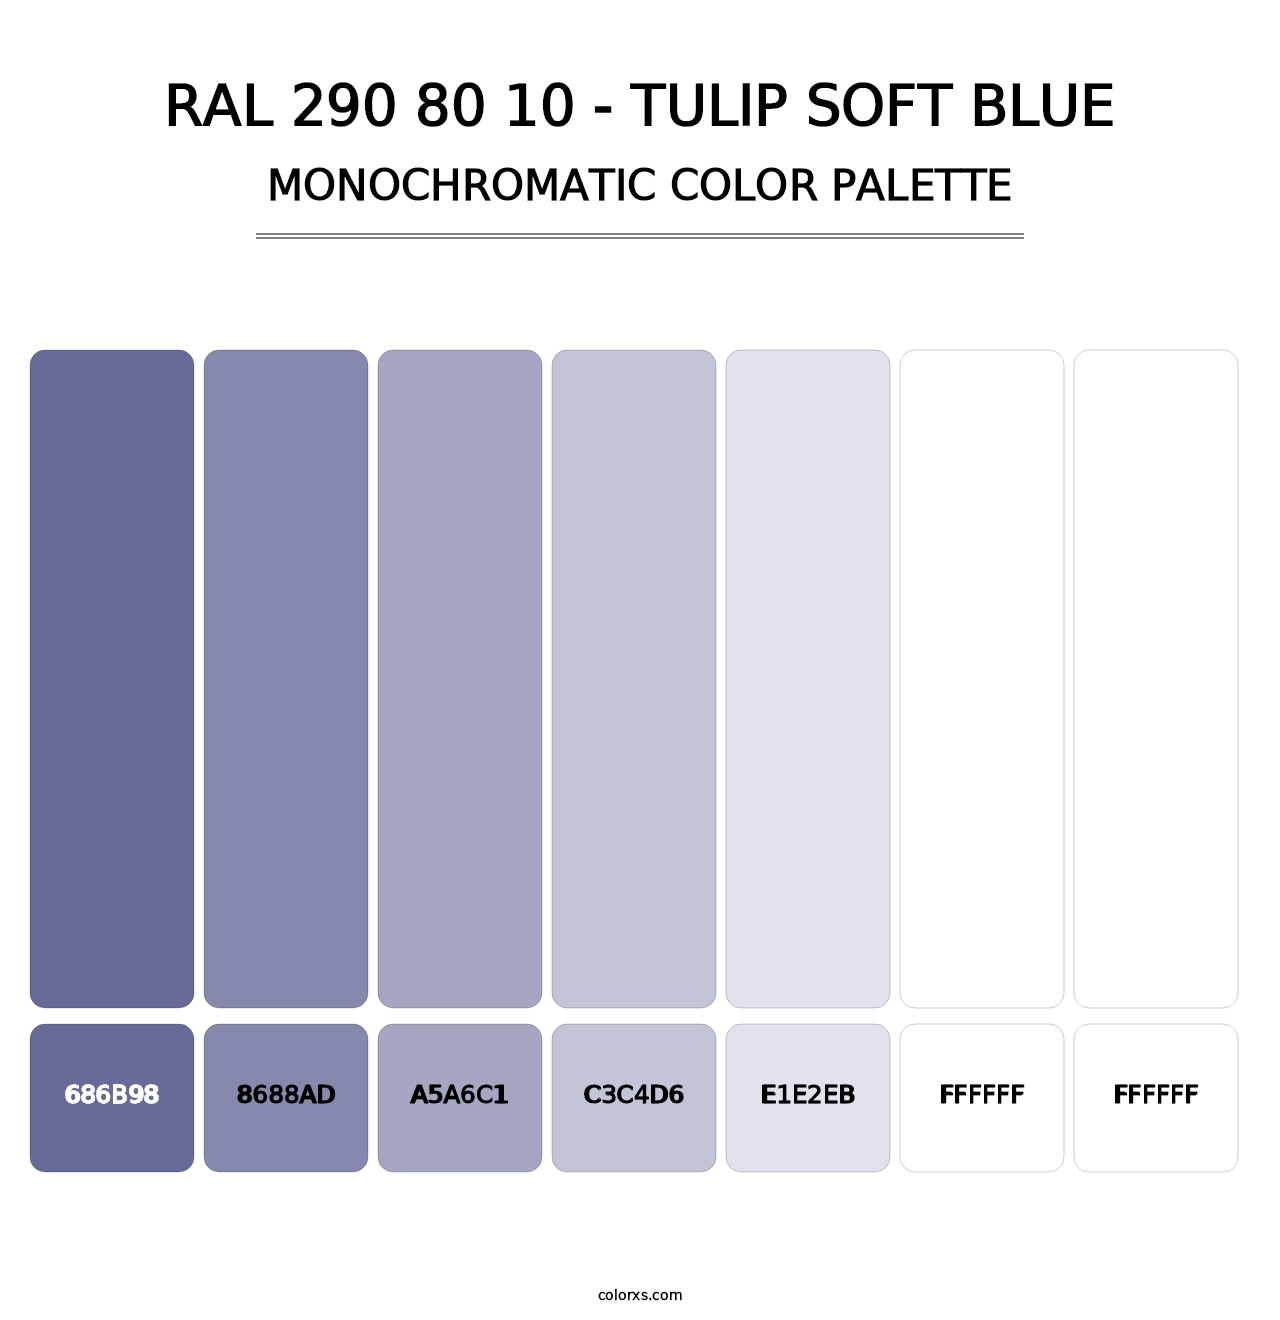 RAL 290 80 10 - Tulip Soft Blue - Monochromatic Color Palette